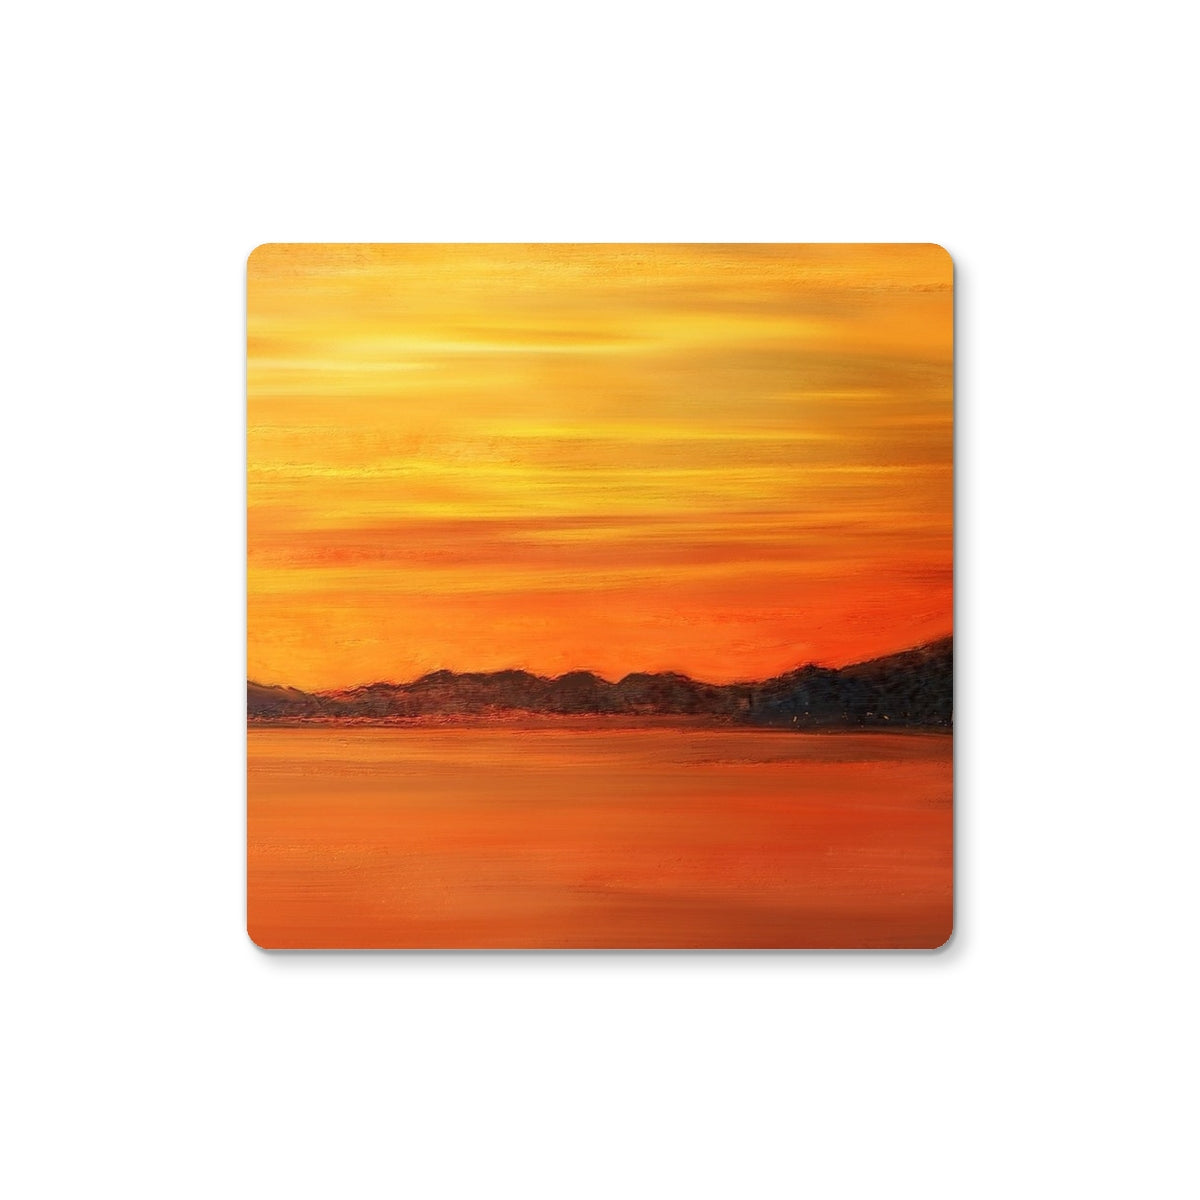 Loch Fyne Sunset Art Gifts Coaster